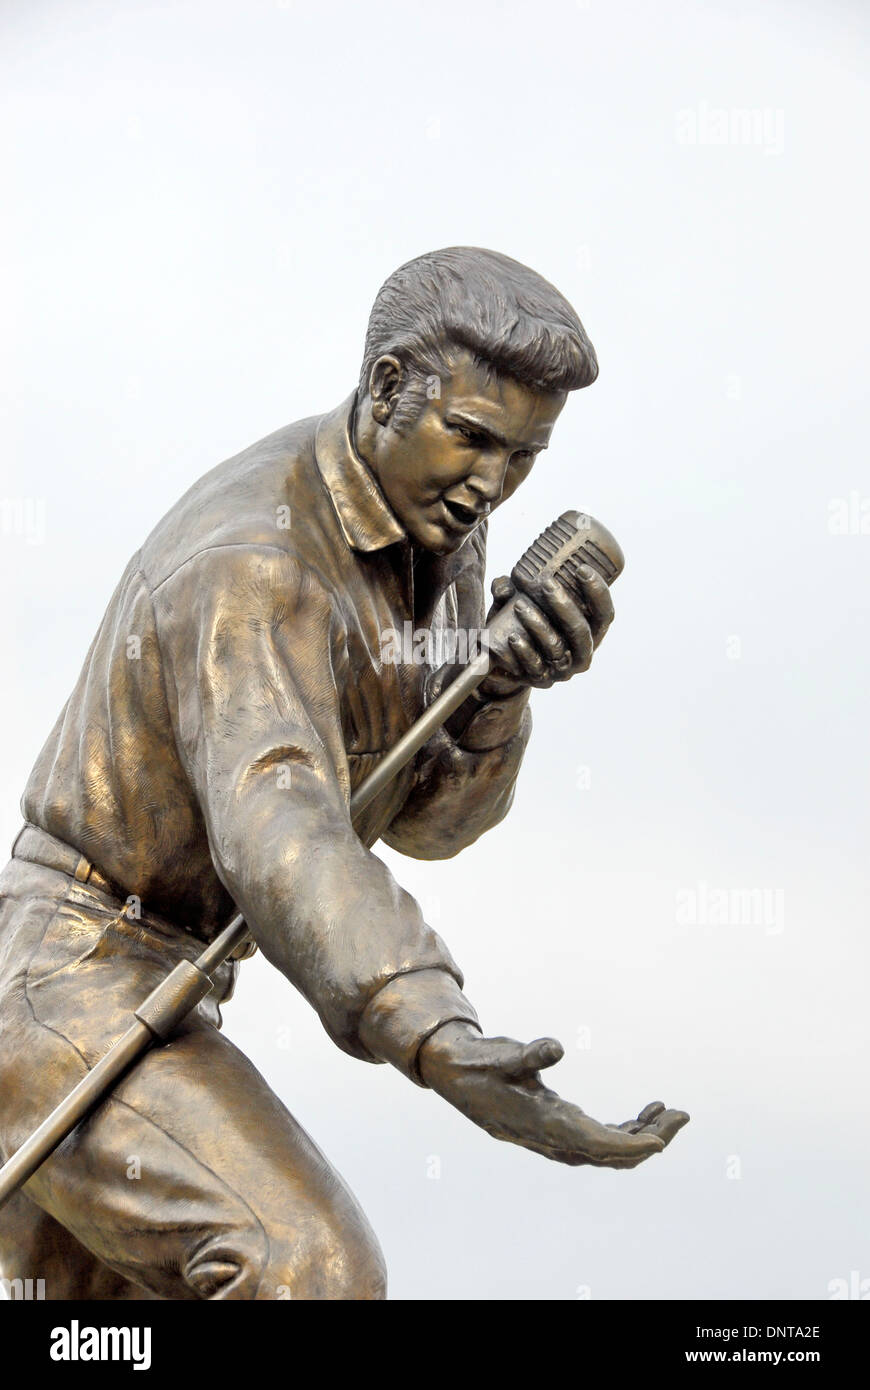 Statue d'Elvis Presley à son retour les concerts en 1956 à Tupelo, Mississippi, le domicile d'Elvis Presley pour ses 13 premières années Banque D'Images